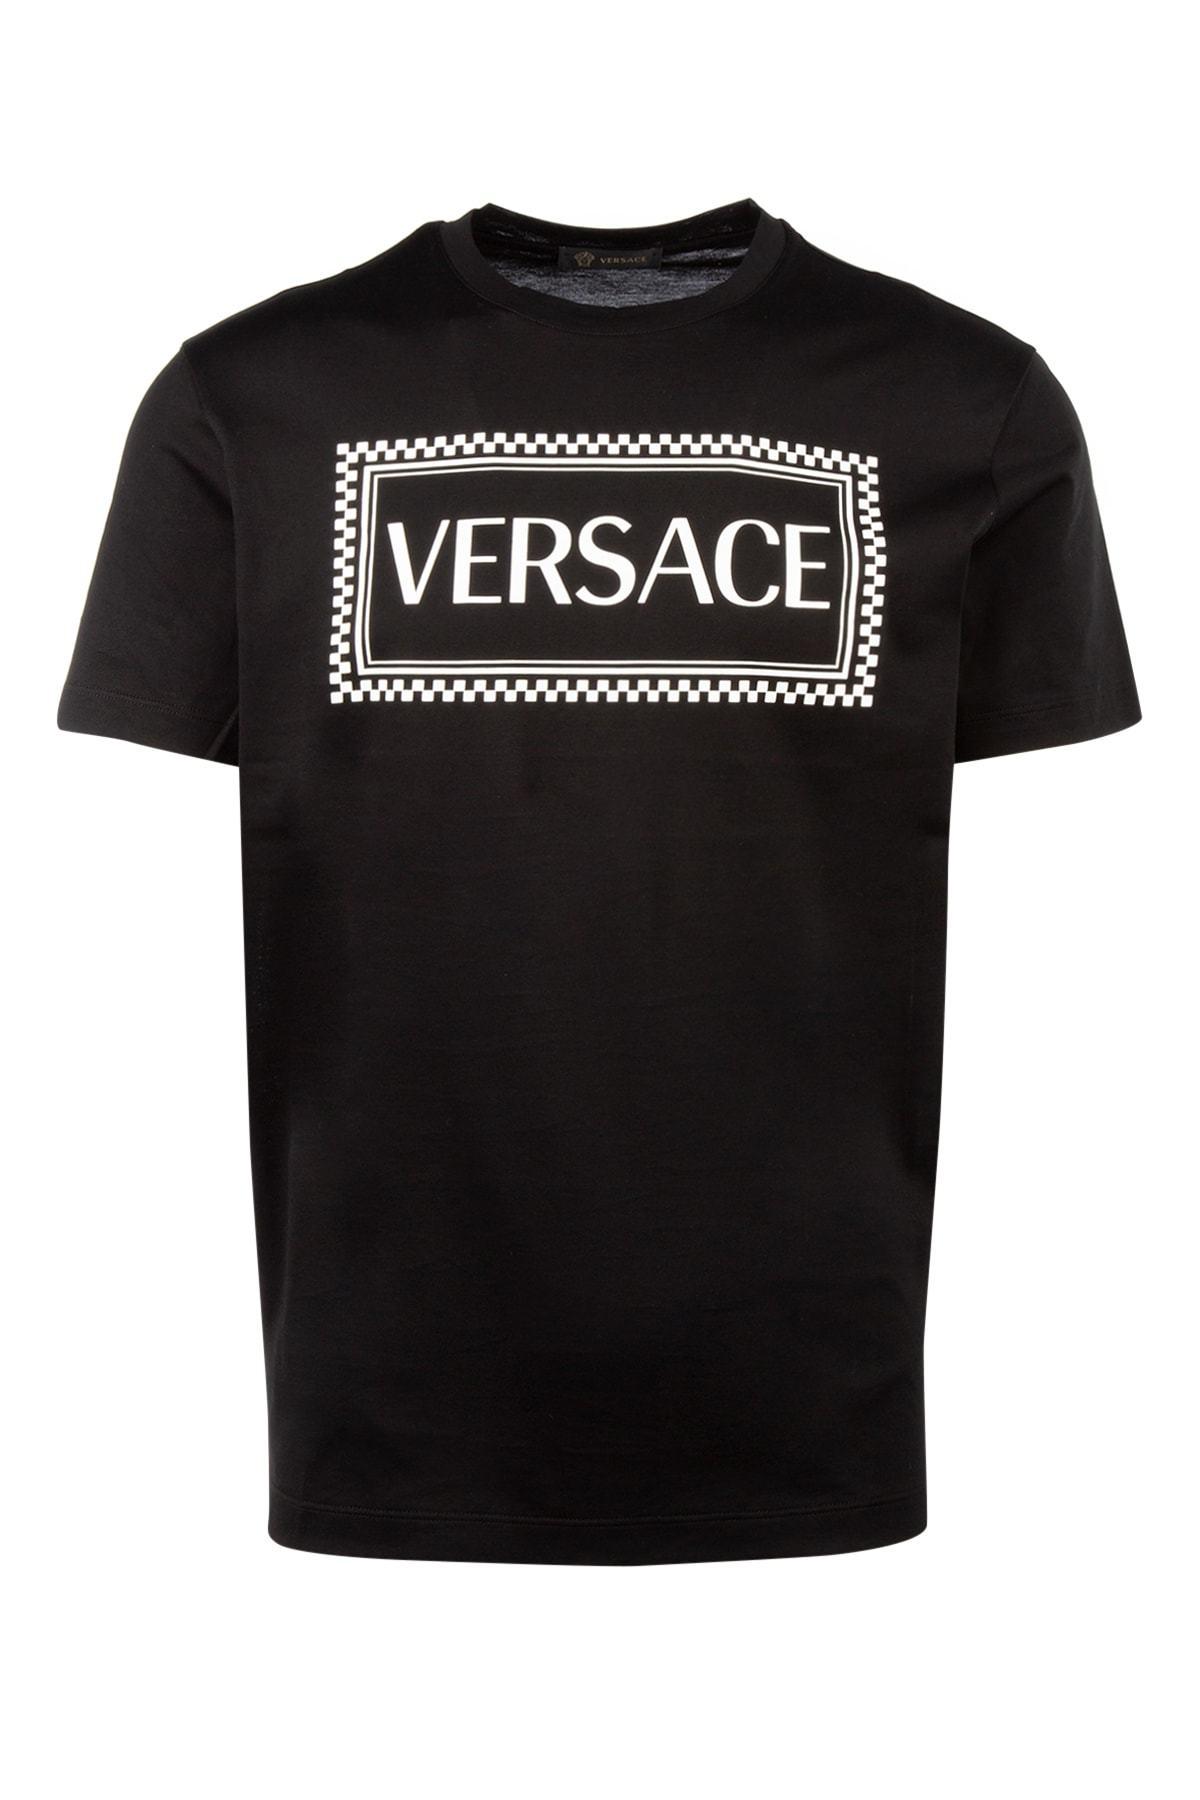 For pokker Beskæftiget delikat Versace 90s Vintage Logo T-shirt in Black for Men | Lyst